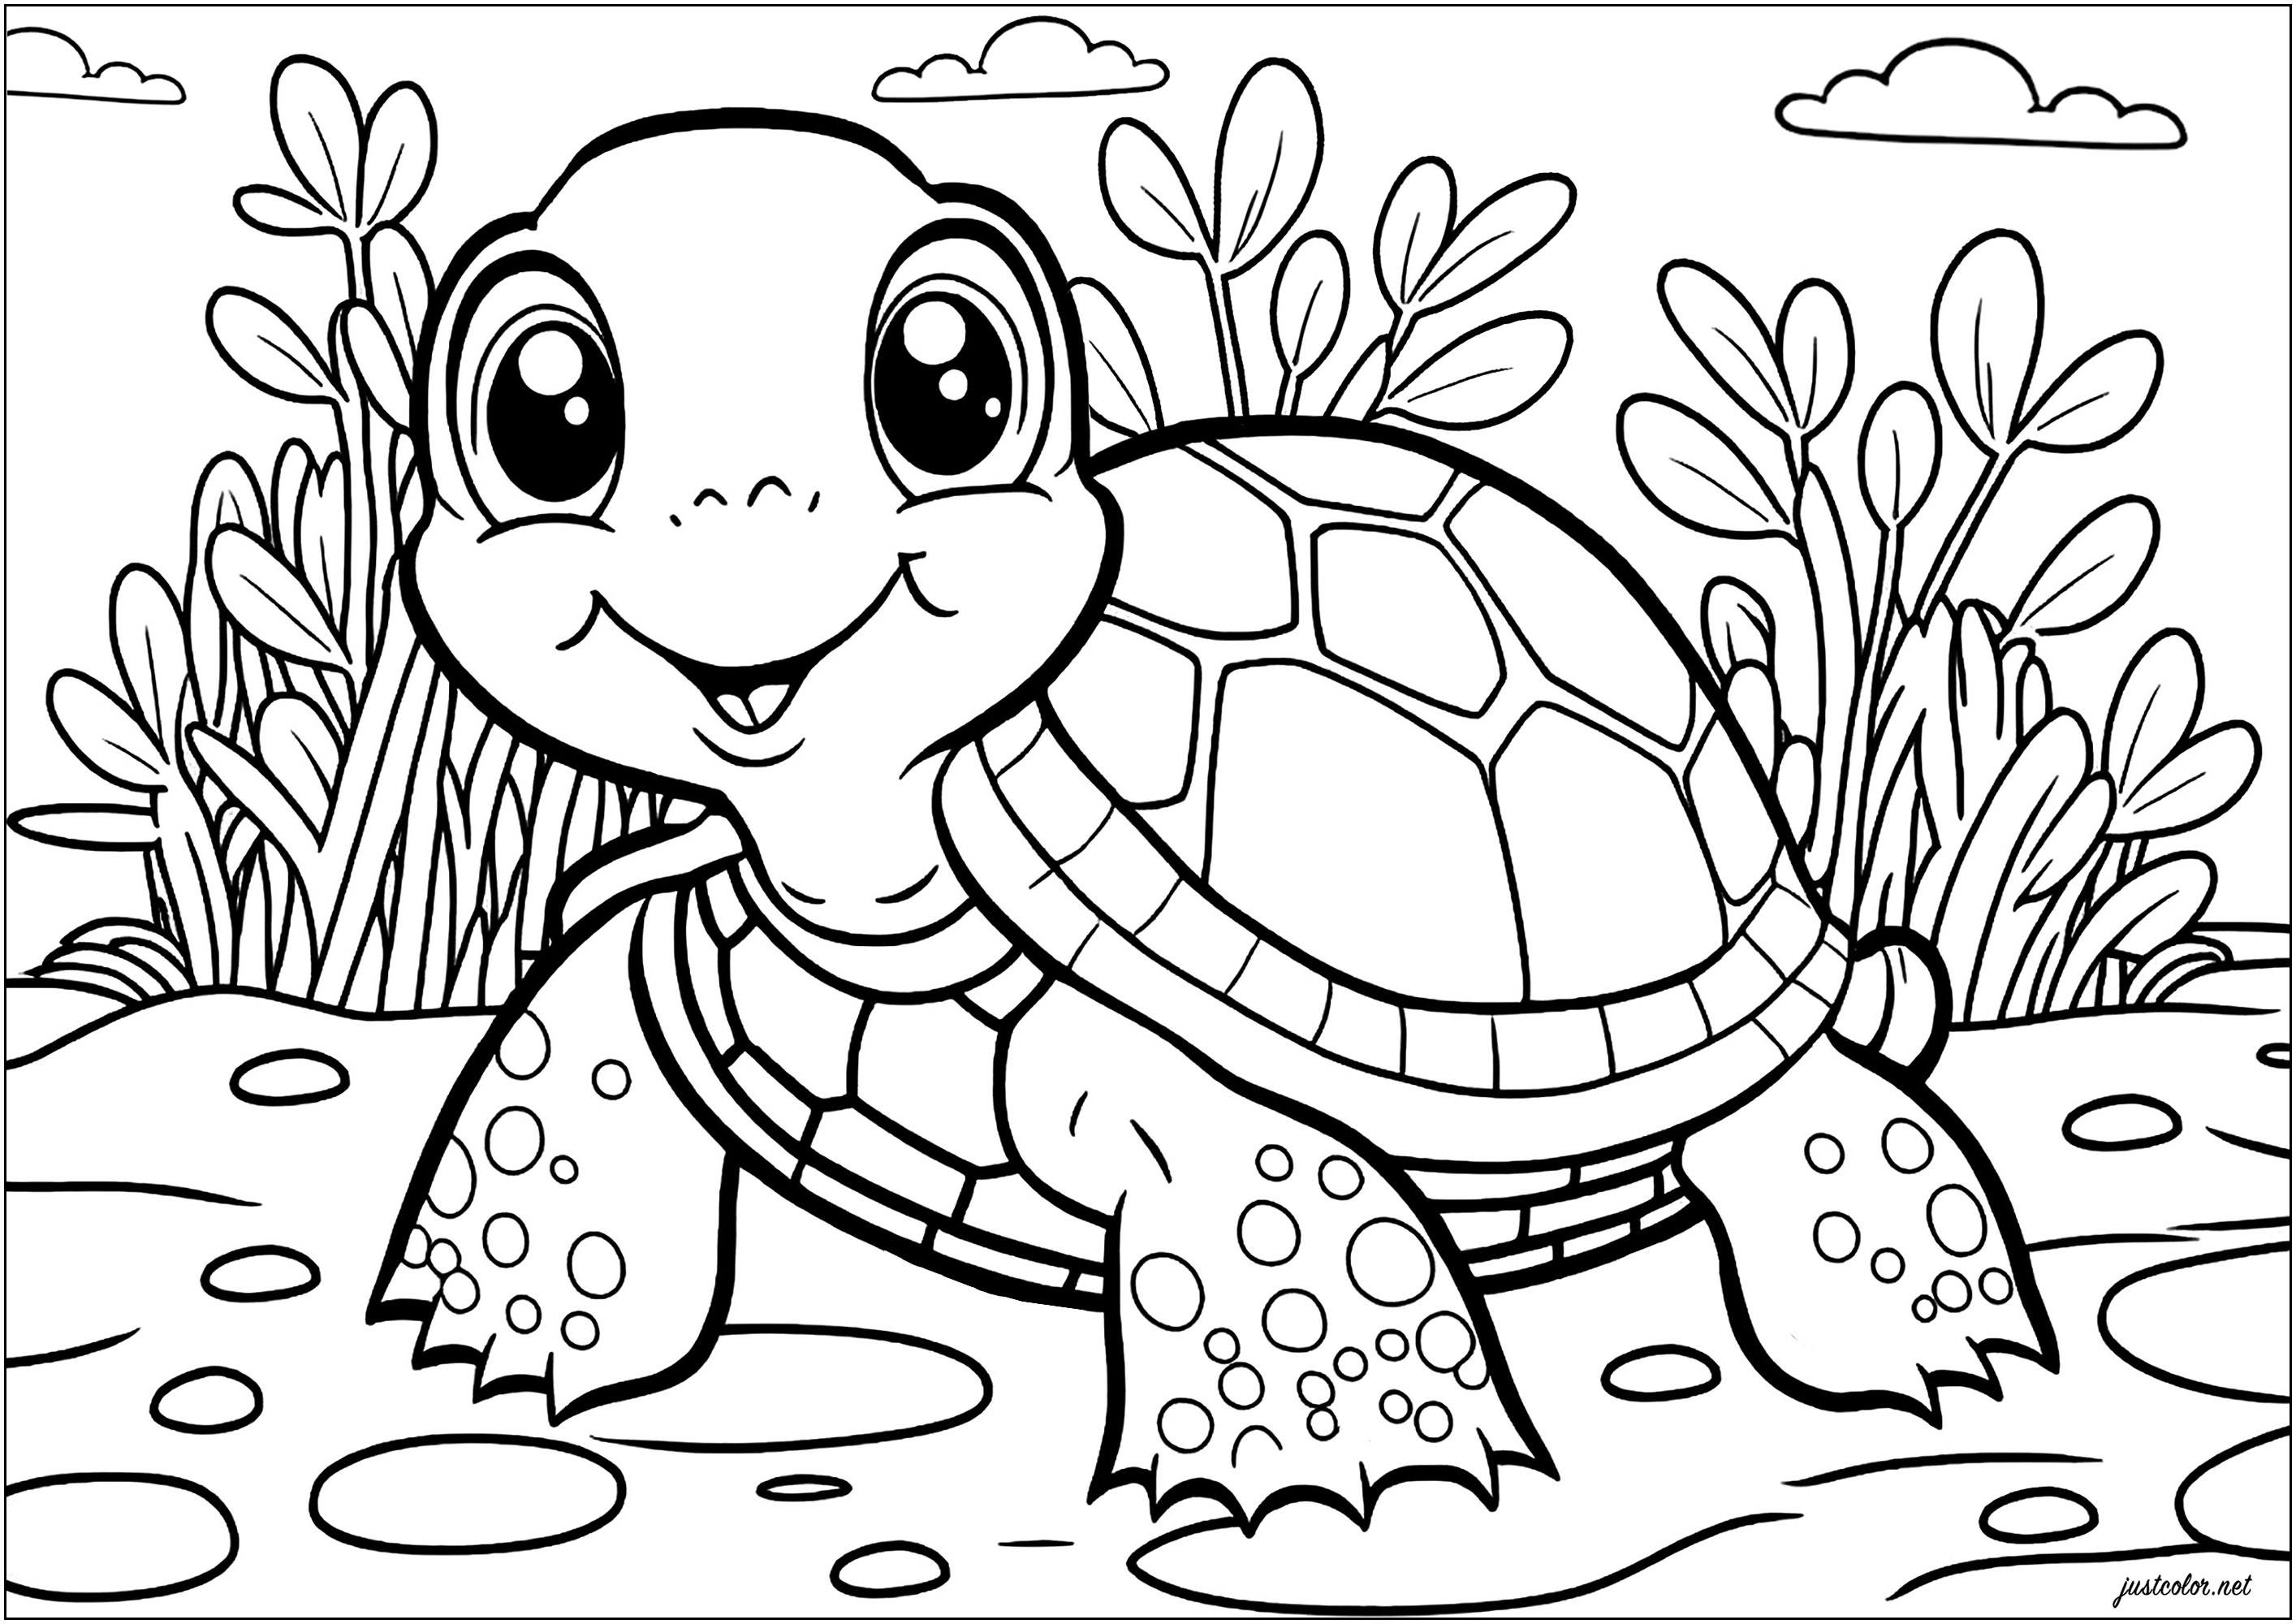 Einfache Schildkröte Färbung. Zeichne die natürliche Welt um diese Schildkröte mit deiner Kreativität und deinen Lieblingsfarben.